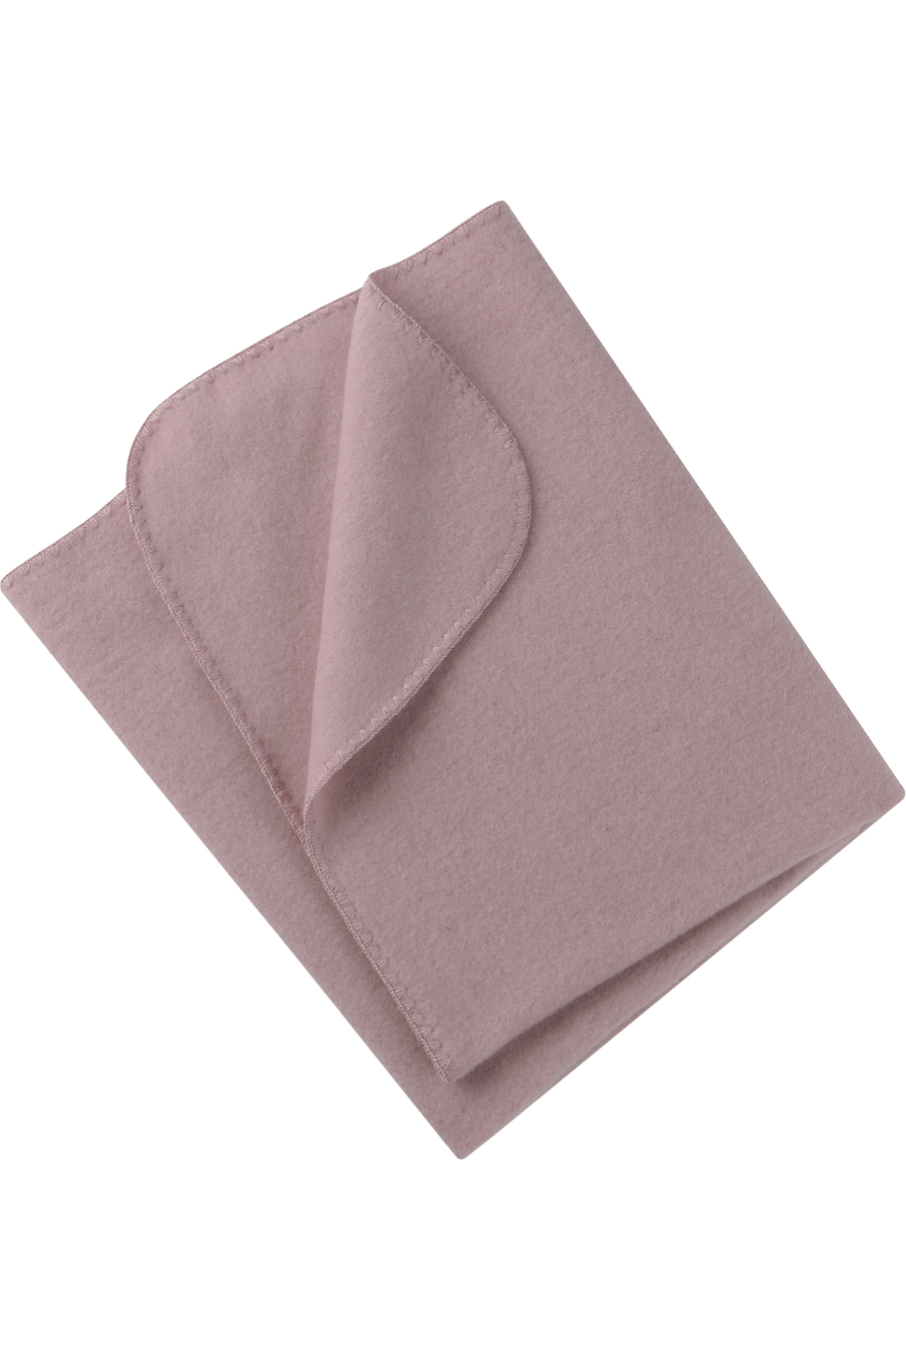 Engel - Organic Merino Wool Fleece Baby Blanket